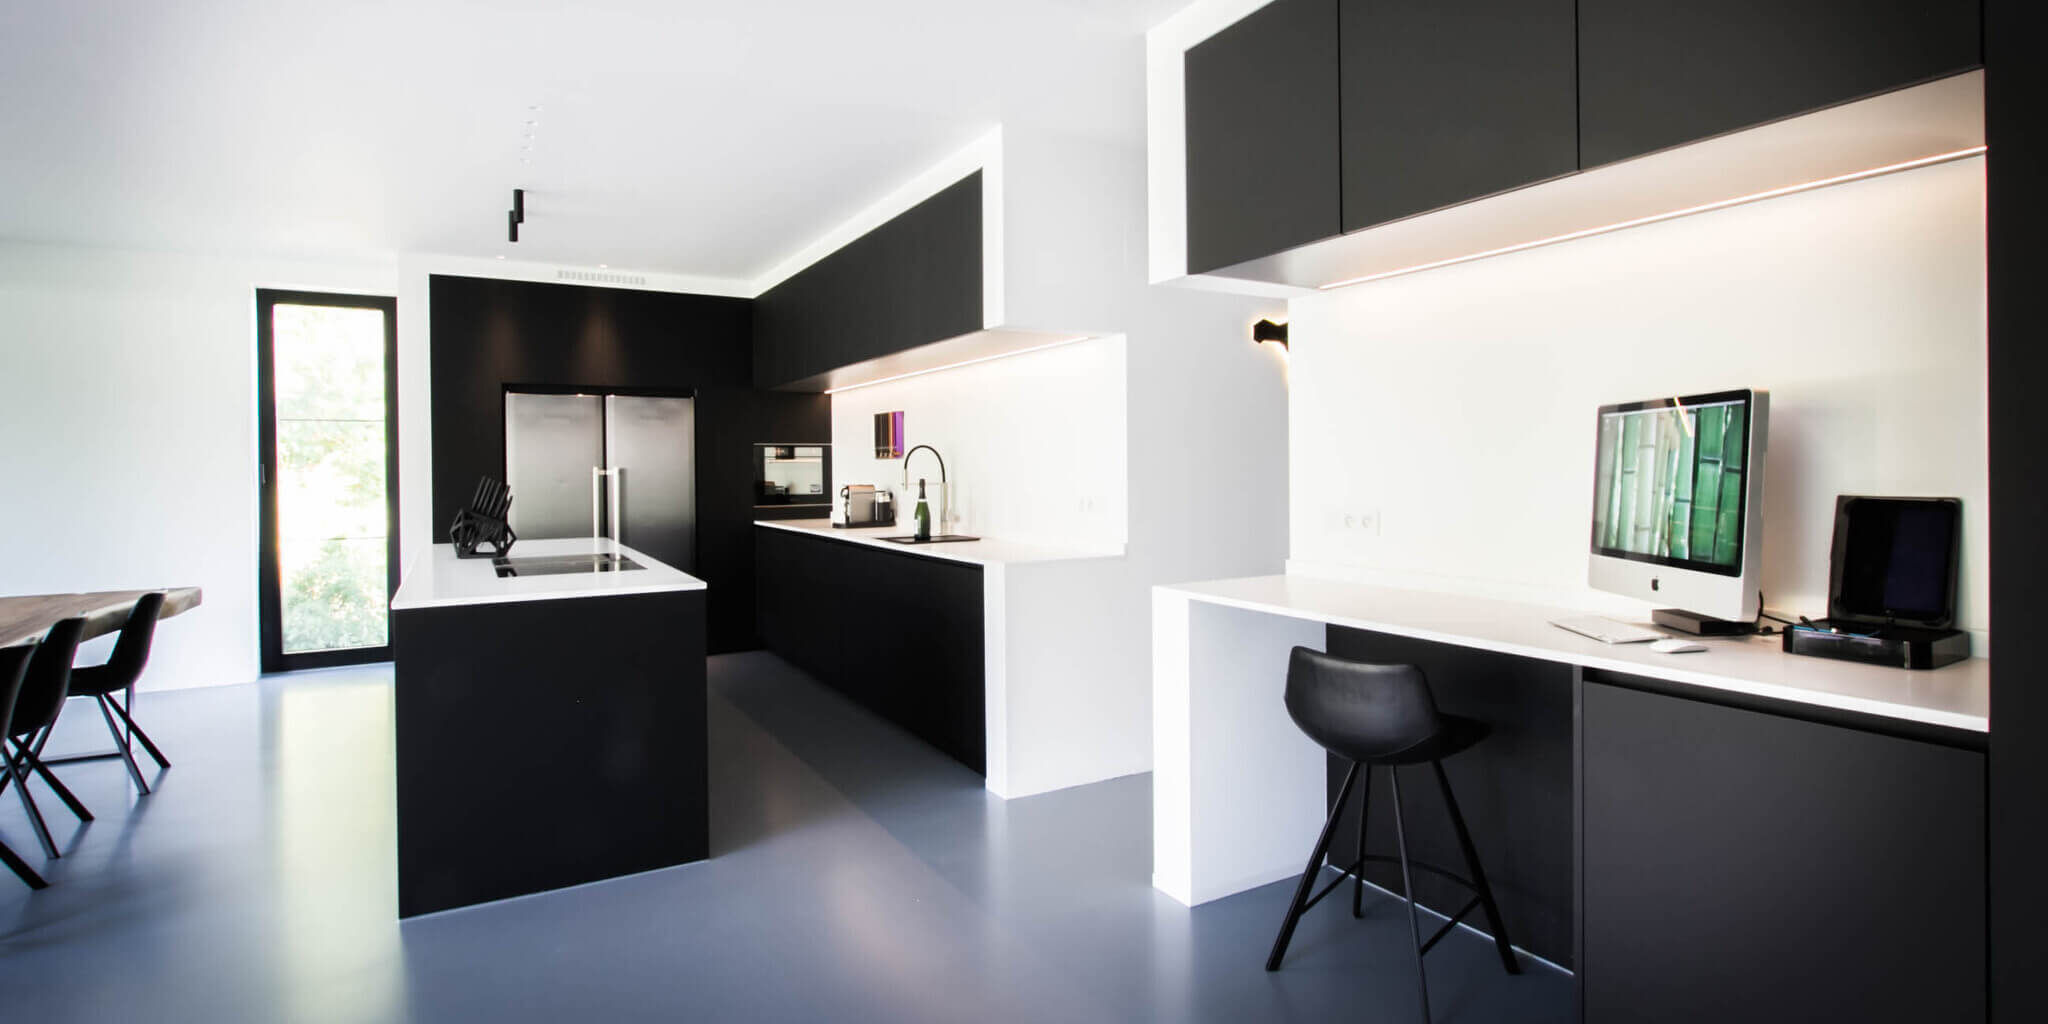 Maak het zwaar eiland archief Zwarte keuken met wit blad: een ontwerp met x-factor - Tieleman Keukens